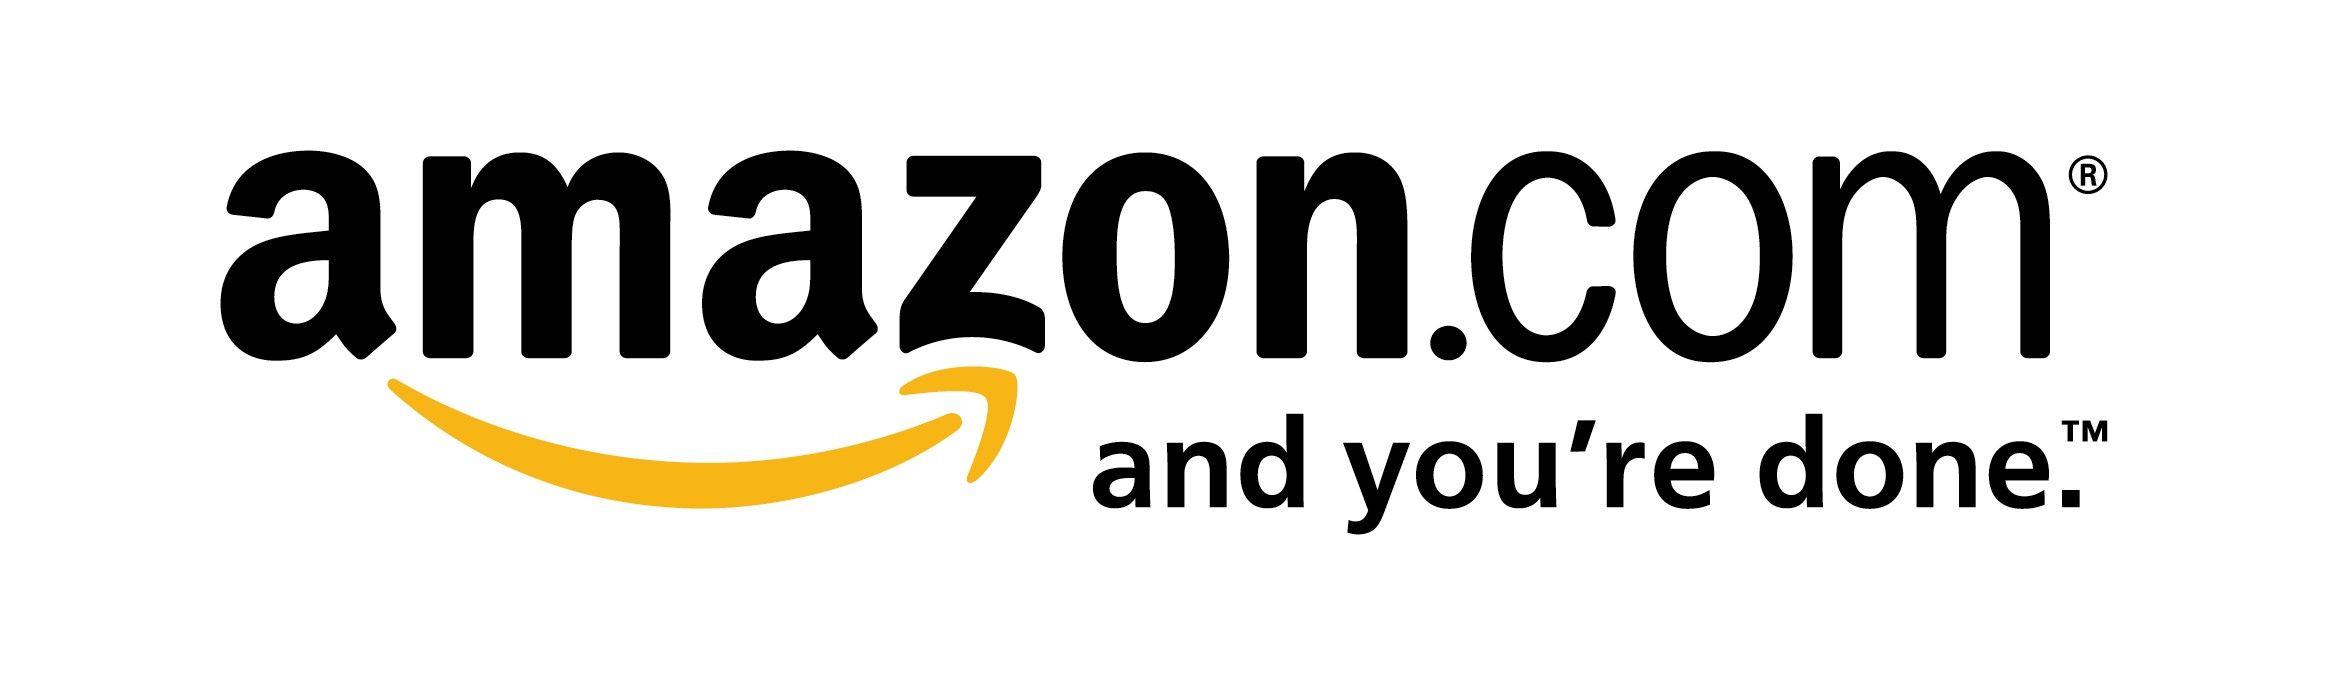 Amazon Company Logo - Amazon is 20 Years Old | Network Intellect